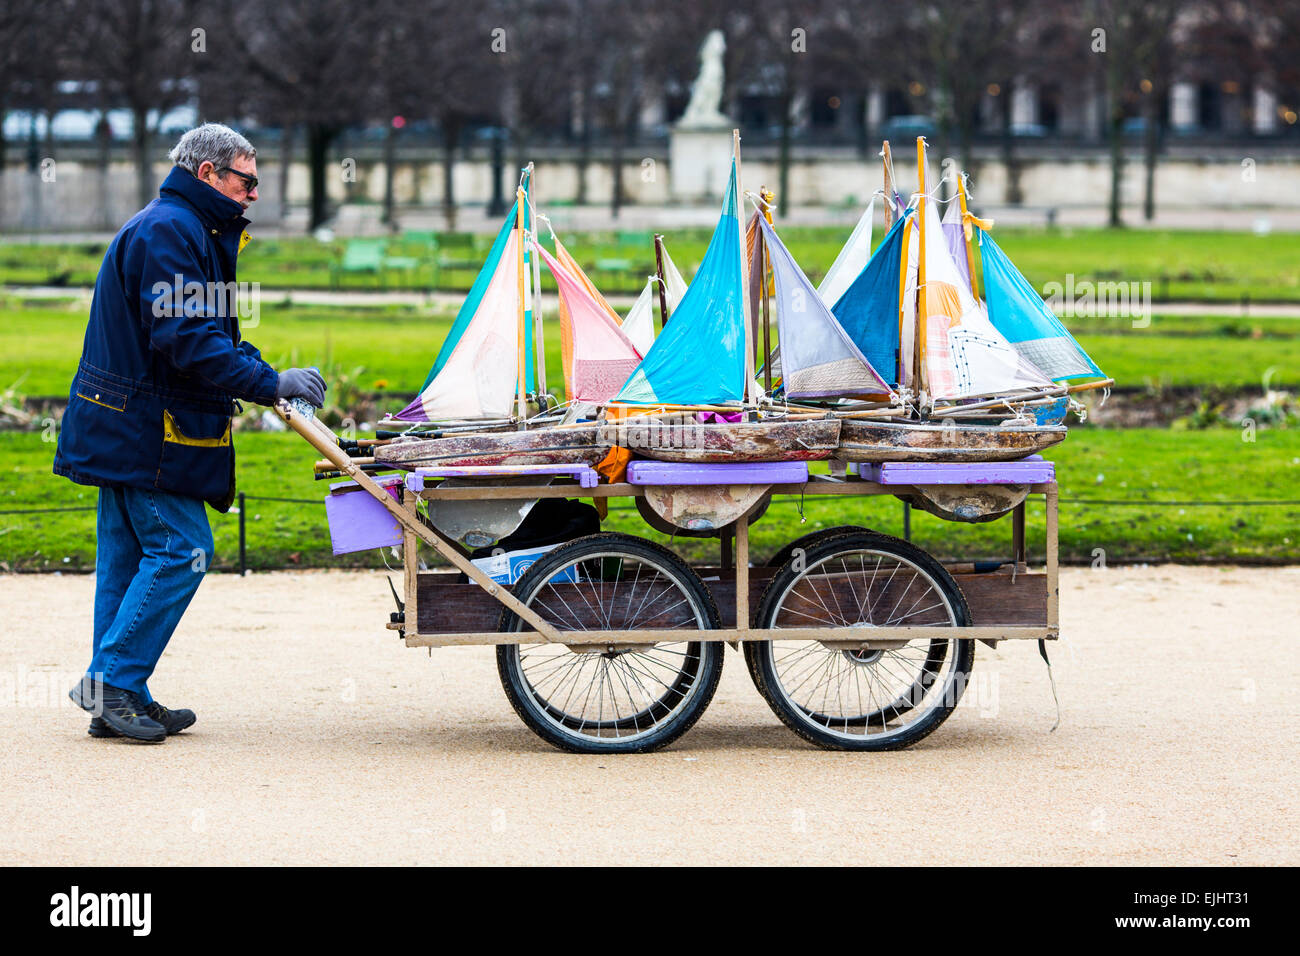 Homme avec panier jouet transportant des voiliers dans le jardin des Tuileries, Paris, France Banque D'Images